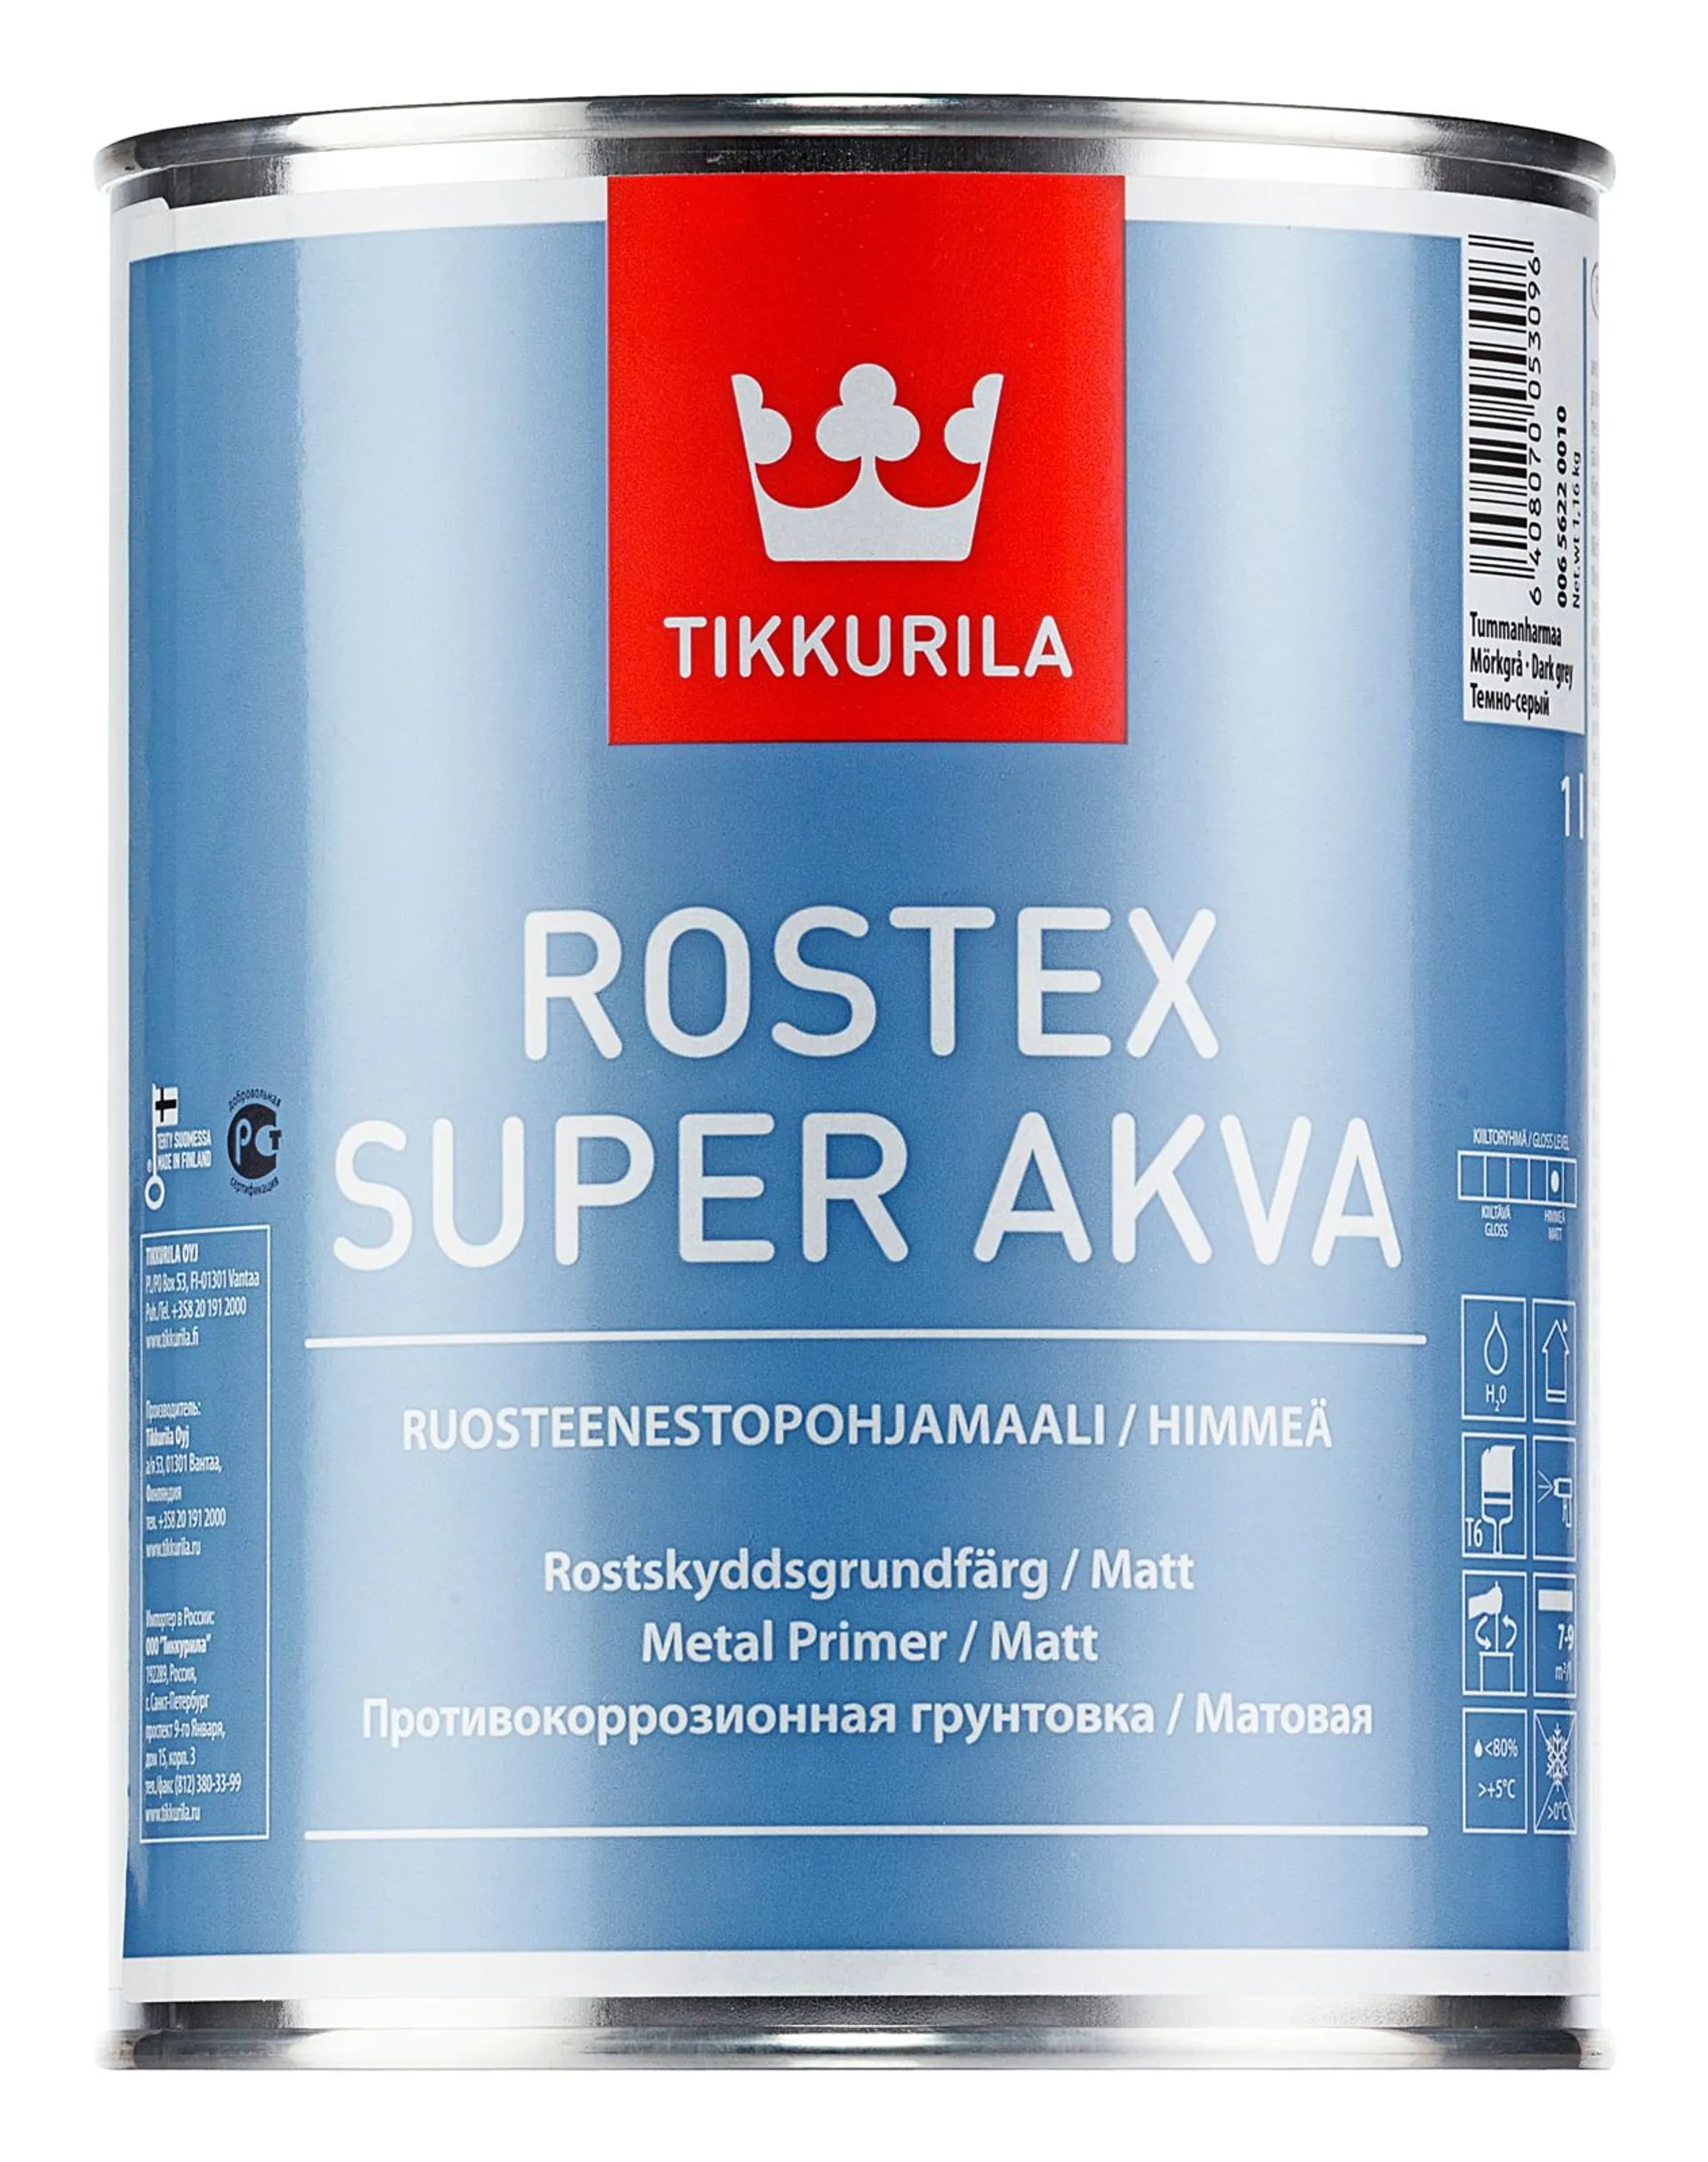 Tikkurila Rostex Super Akva ruosteenestopohjamaali 1l vaaleanharmaa himmeä